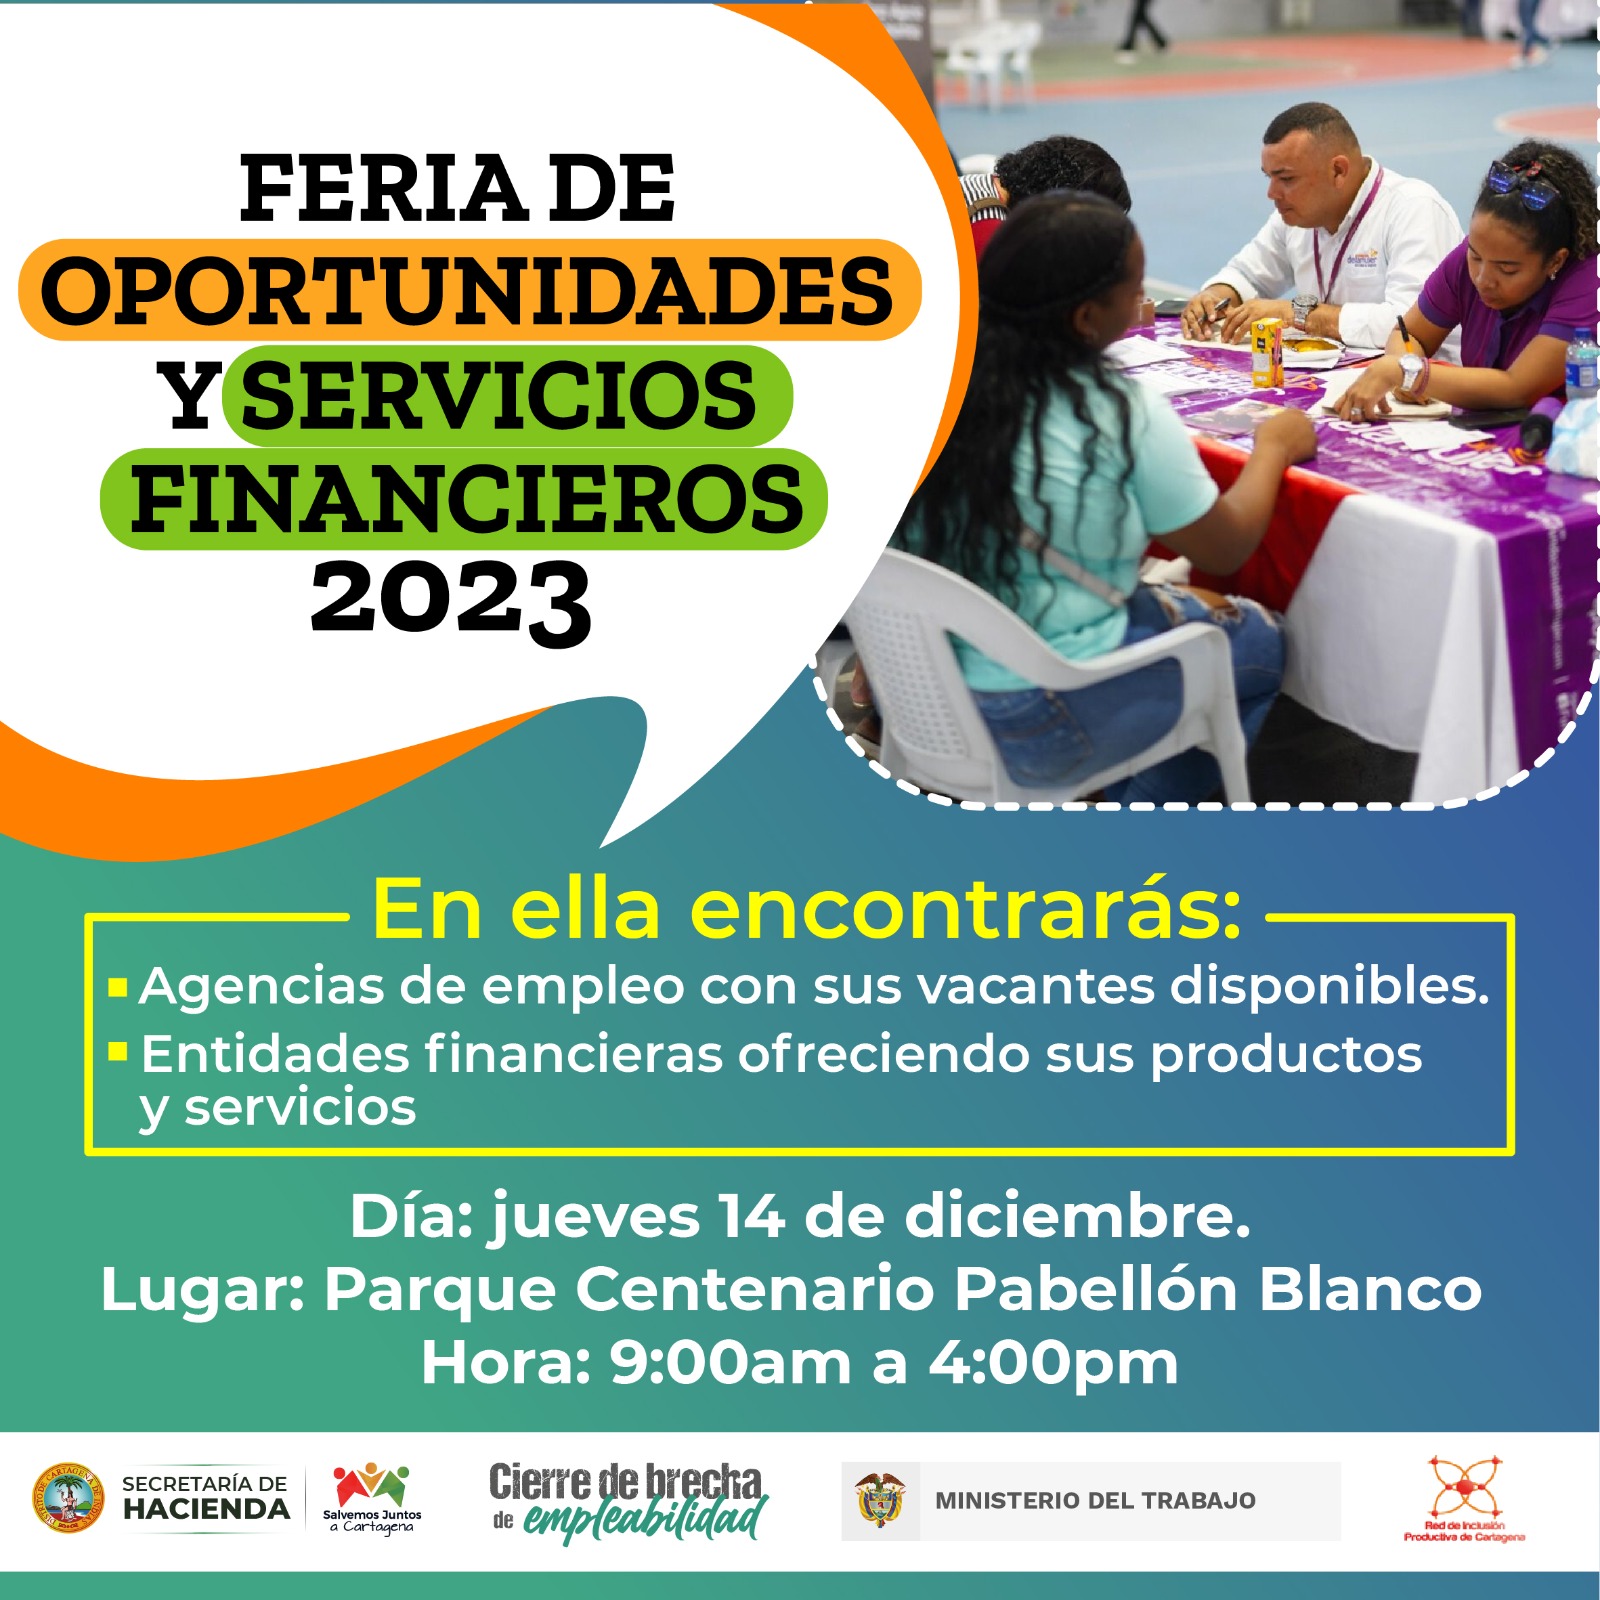 Feria de oportunidades y servicios financieros 2023